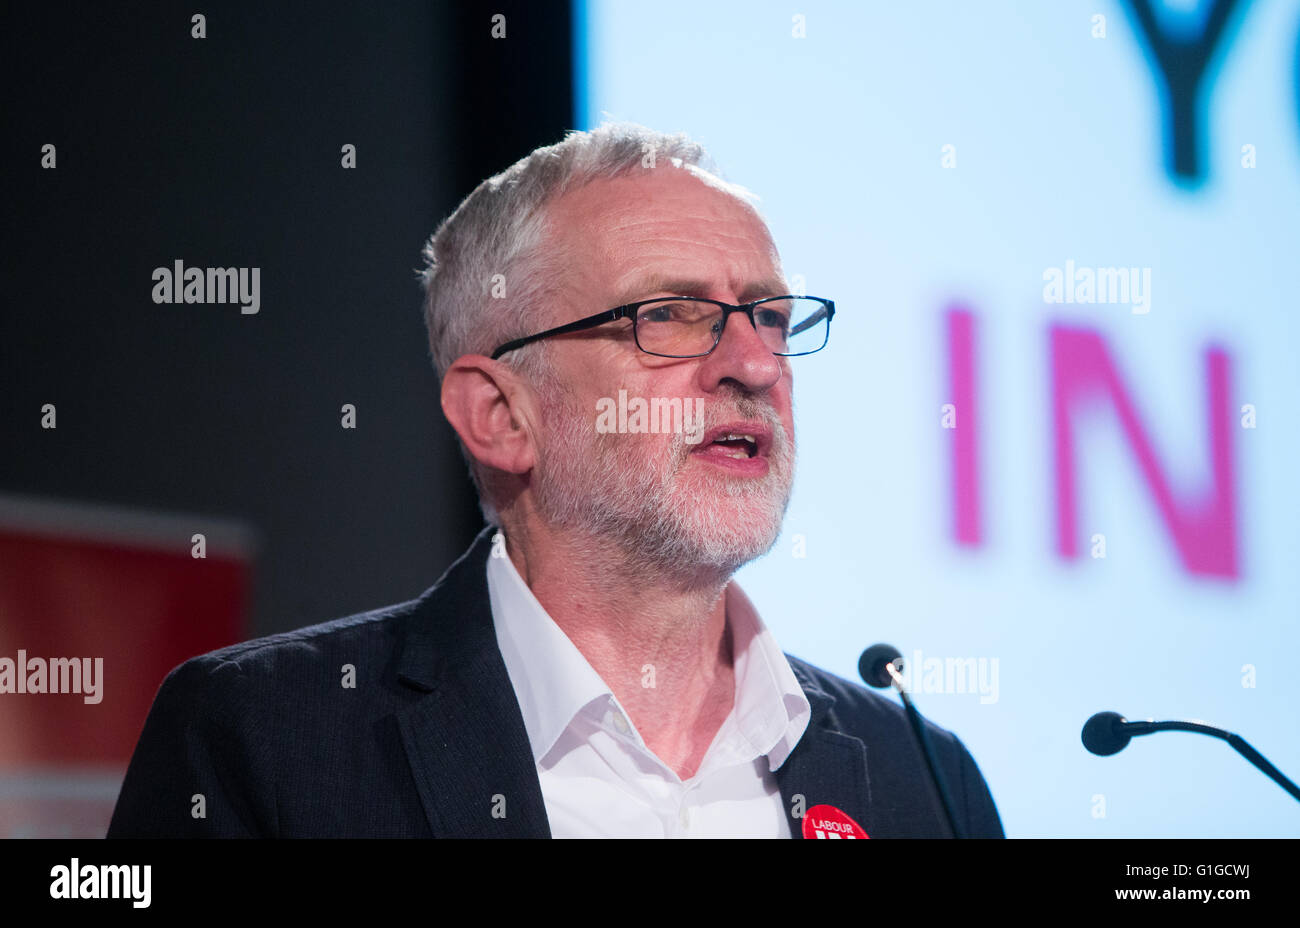 Líder laboral,Jeremy Corbyn,en una votación en la conferencia en Londres Foto de stock